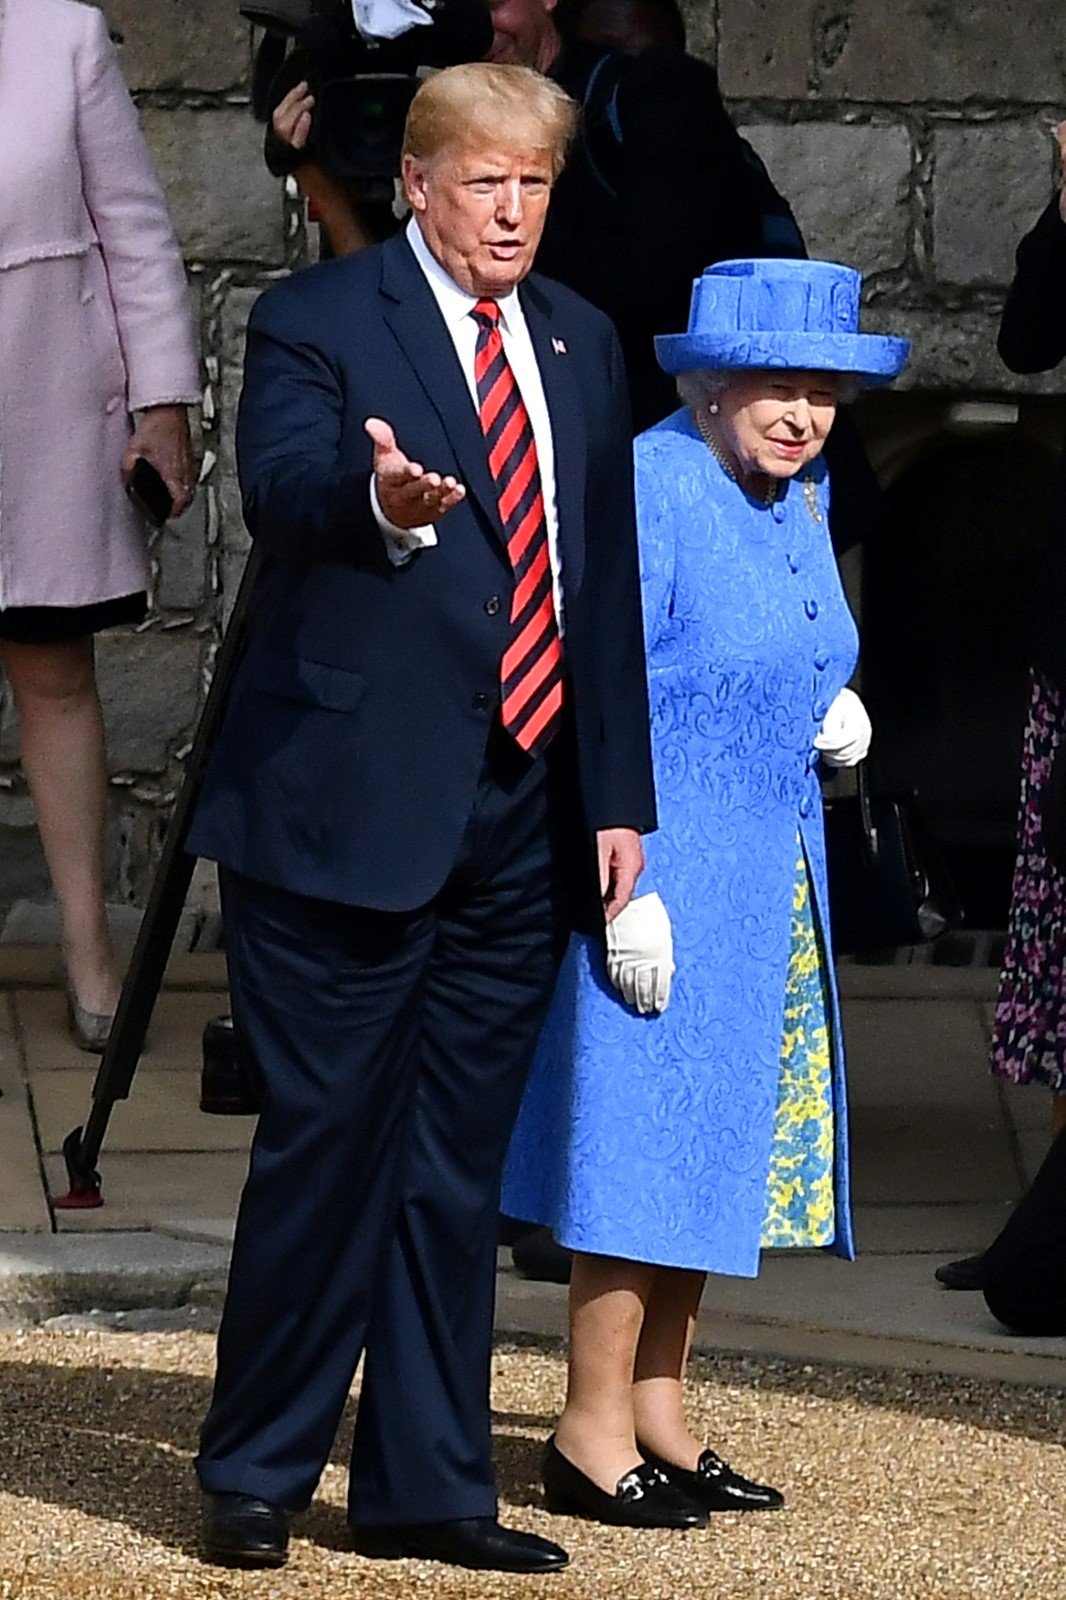 Britská královna Alžběta II. se setkala s americkým prezidentským párem